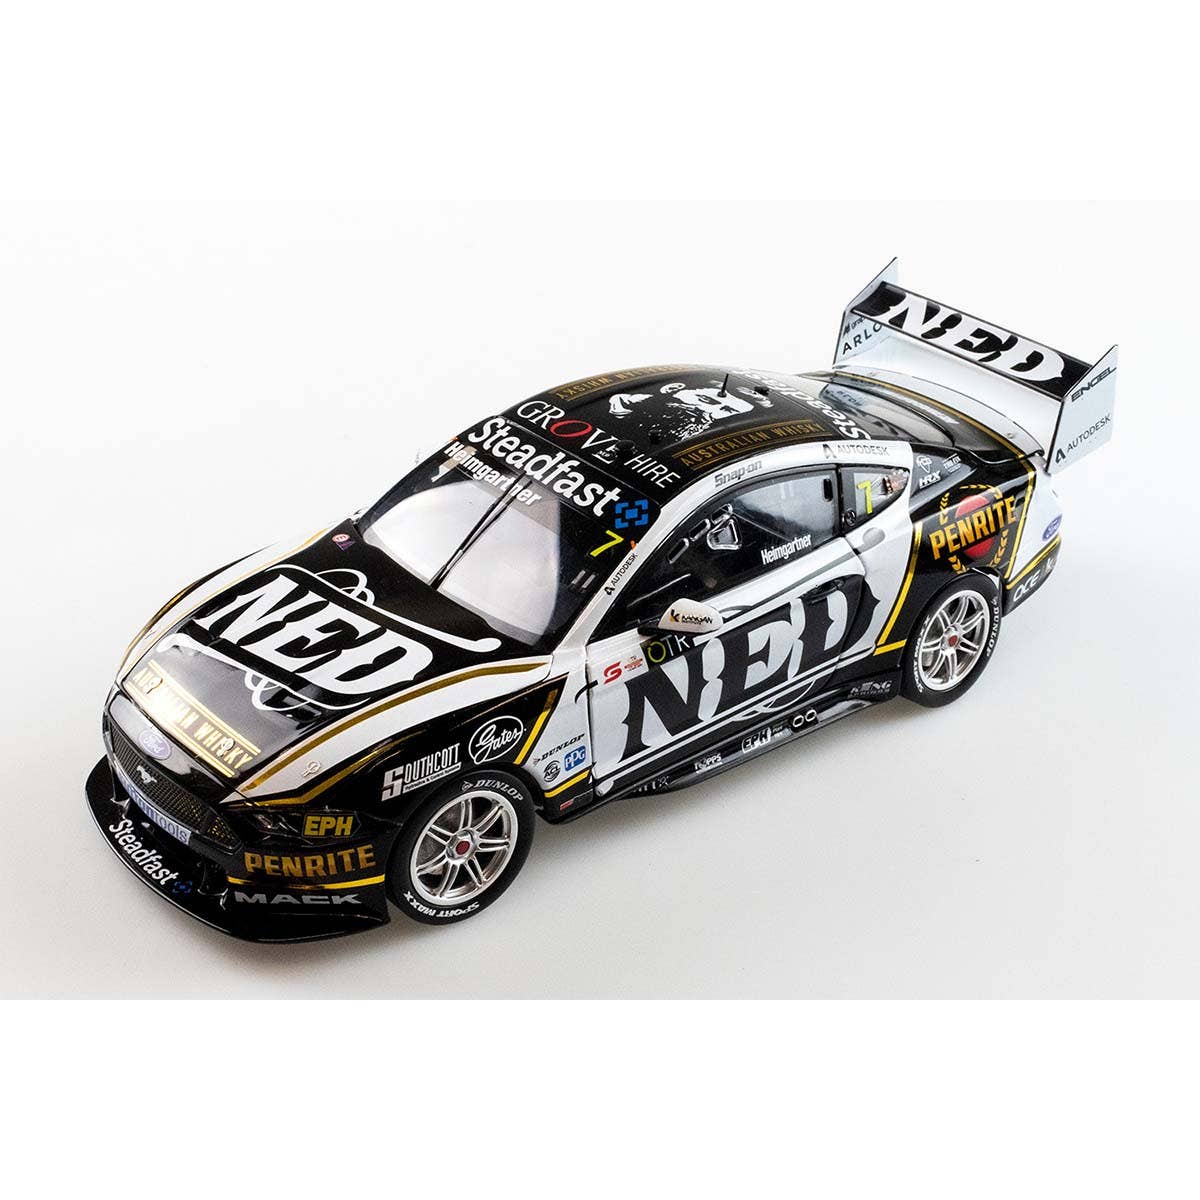 Ford Mustang - #7 Andre Heimgartner - NED Racing - Winner, Race 9, 2021 OTR SuperSprint - 1:18 Model Car